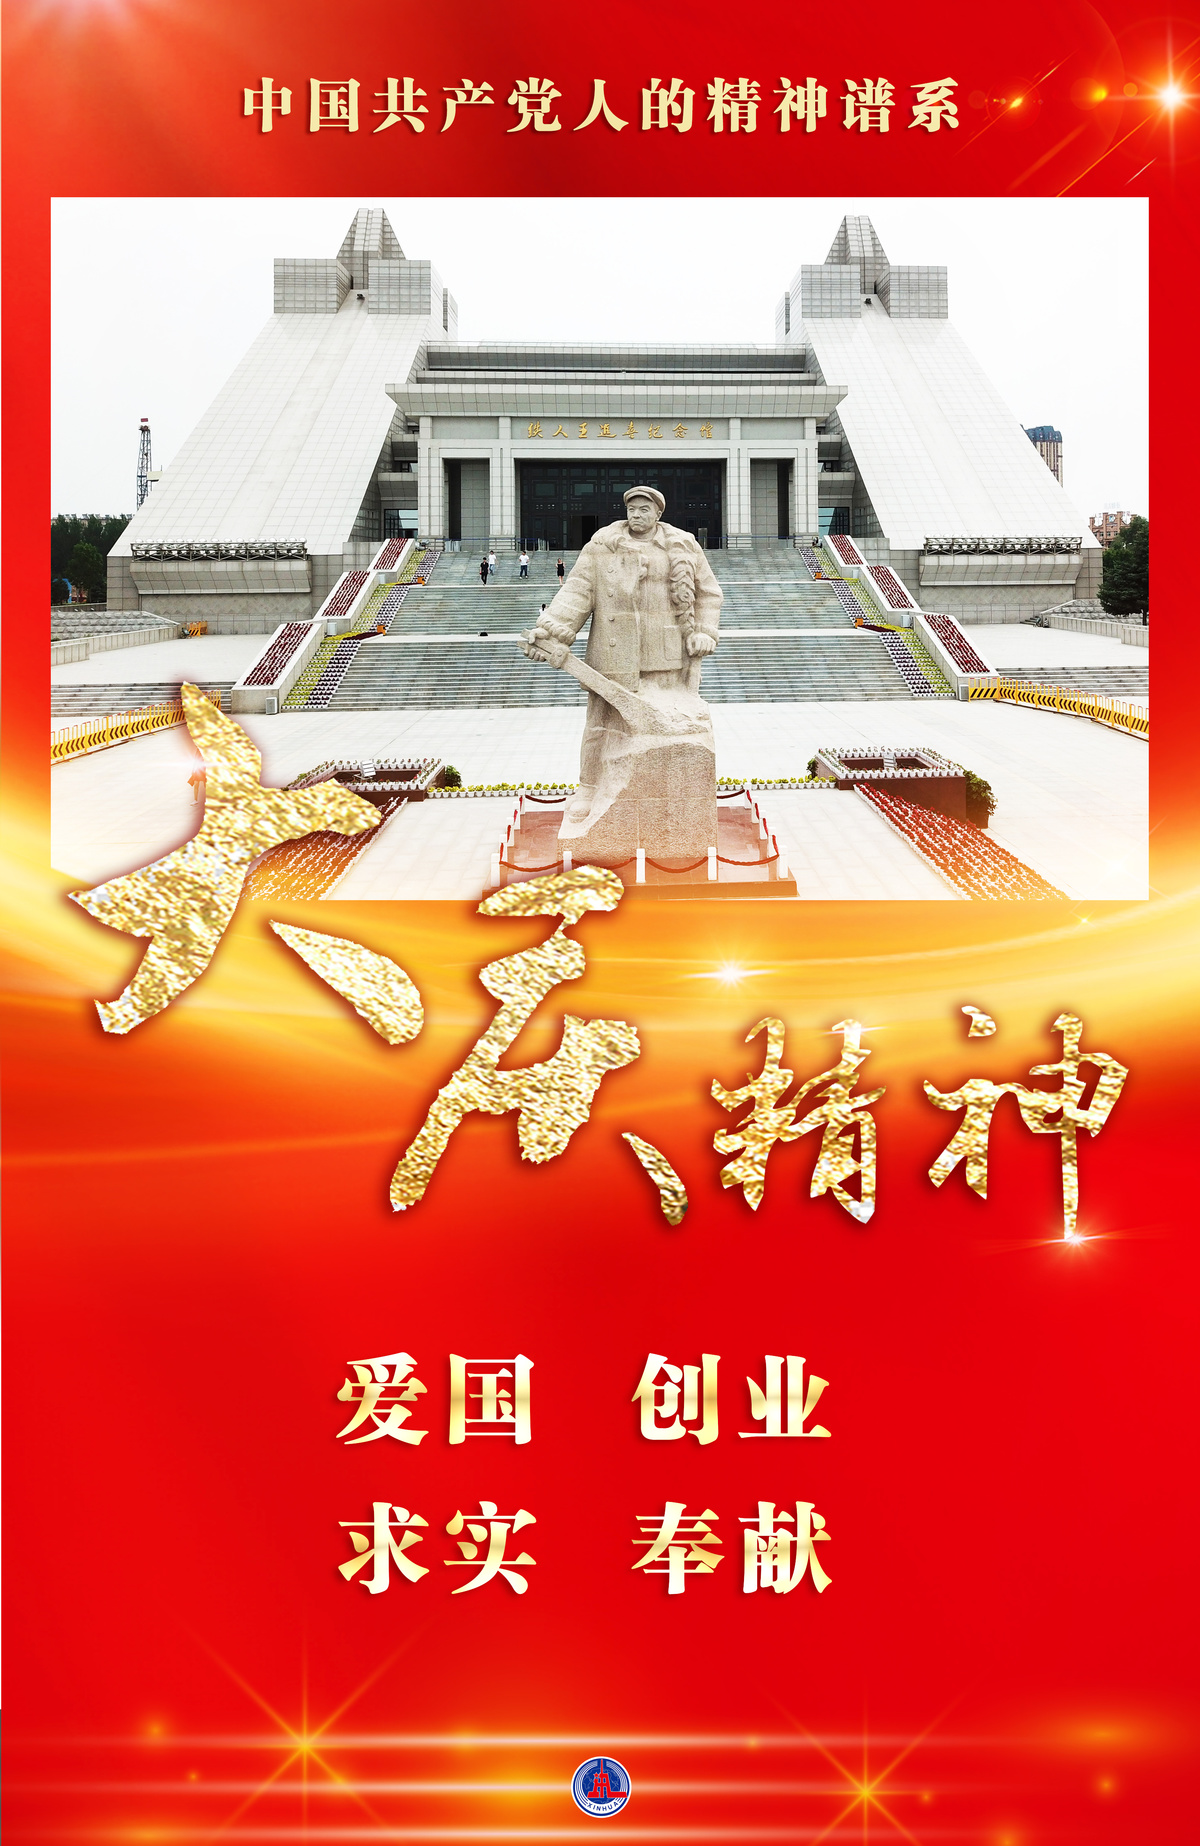 二十五中参加天安门广场升旗仪式-千龙网·中国首都网